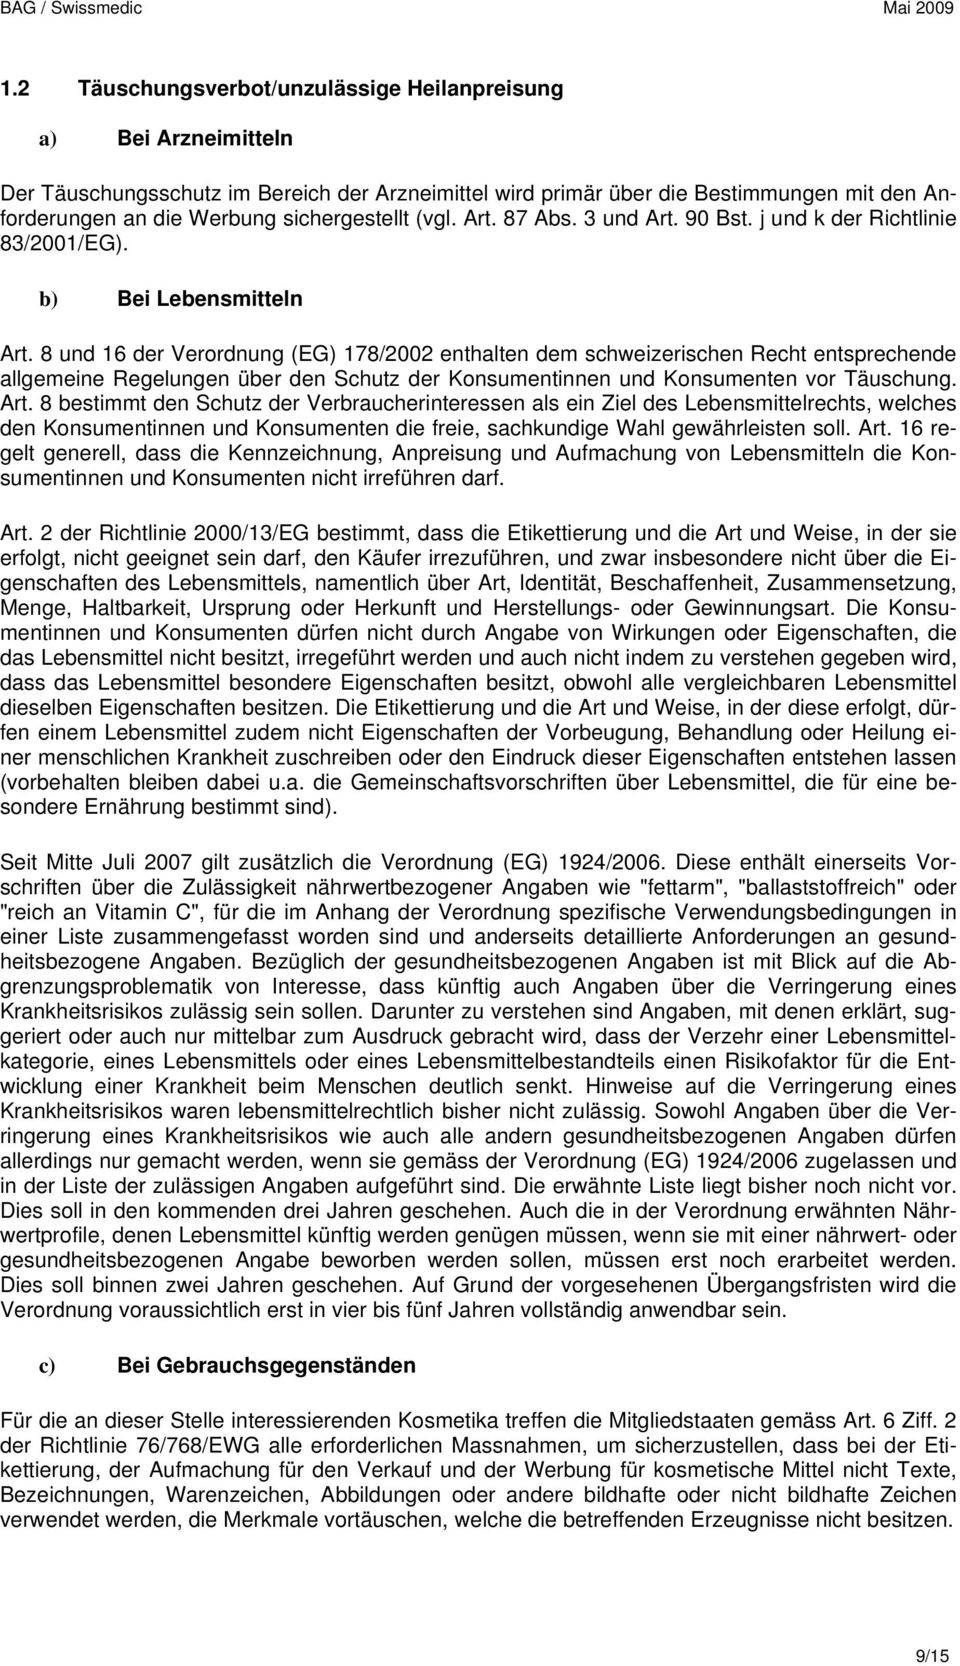 8 und 16 der Verordnung (EG) 178/2002 enthalten dem schweizerischen Recht entsprechende allgemeine Regelungen über den Schutz der Konsumentinnen und Konsumenten vor Täuschung. Art.